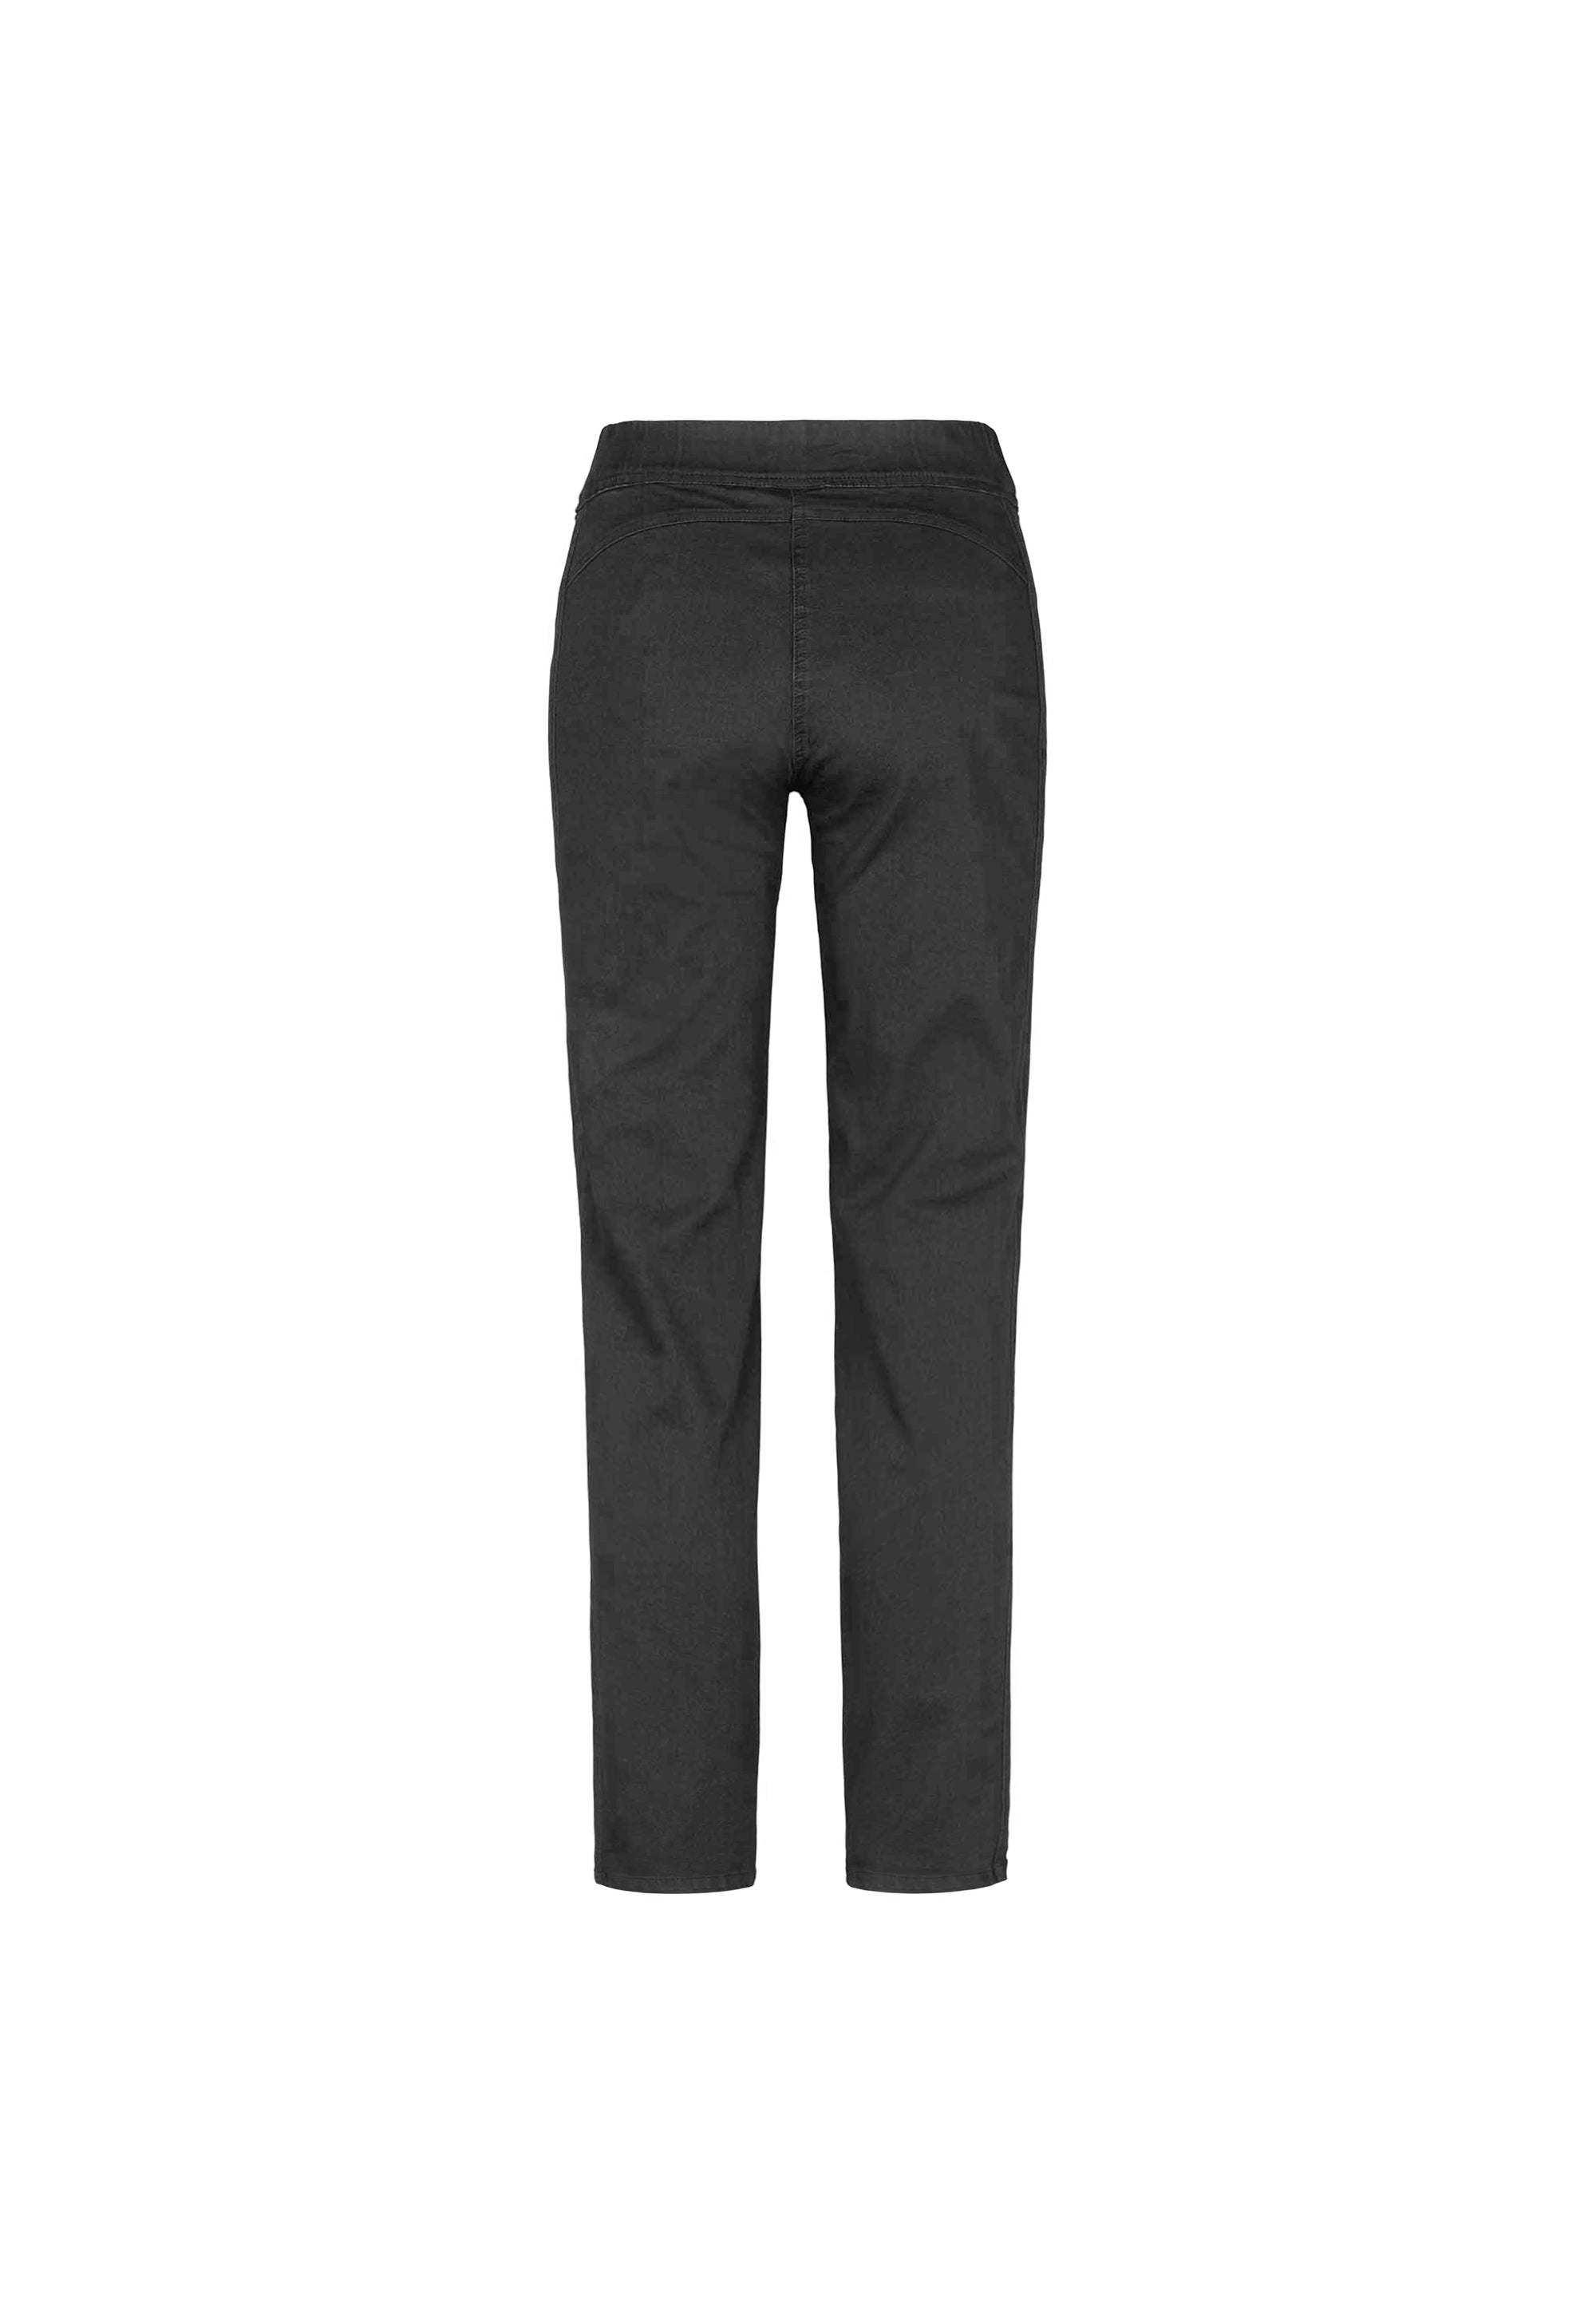 LAURIE Serene Regular - Long Length Trousers REGULAR 99000 Black